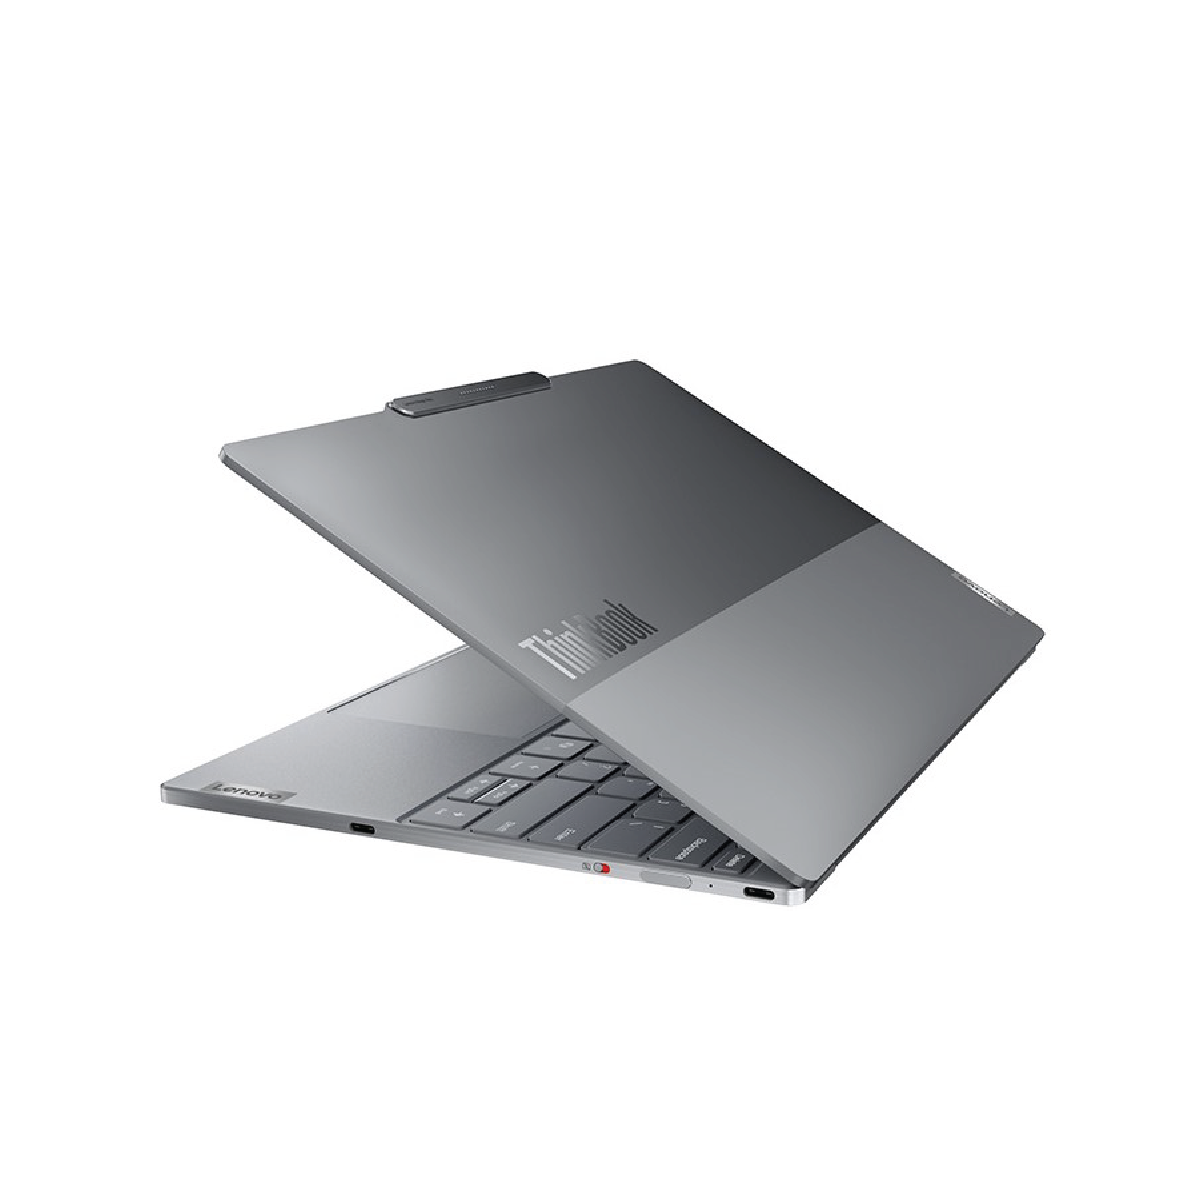 Thinkbook X AI 2024 Ultra 9-185H 32GB RAM 1TB SSD